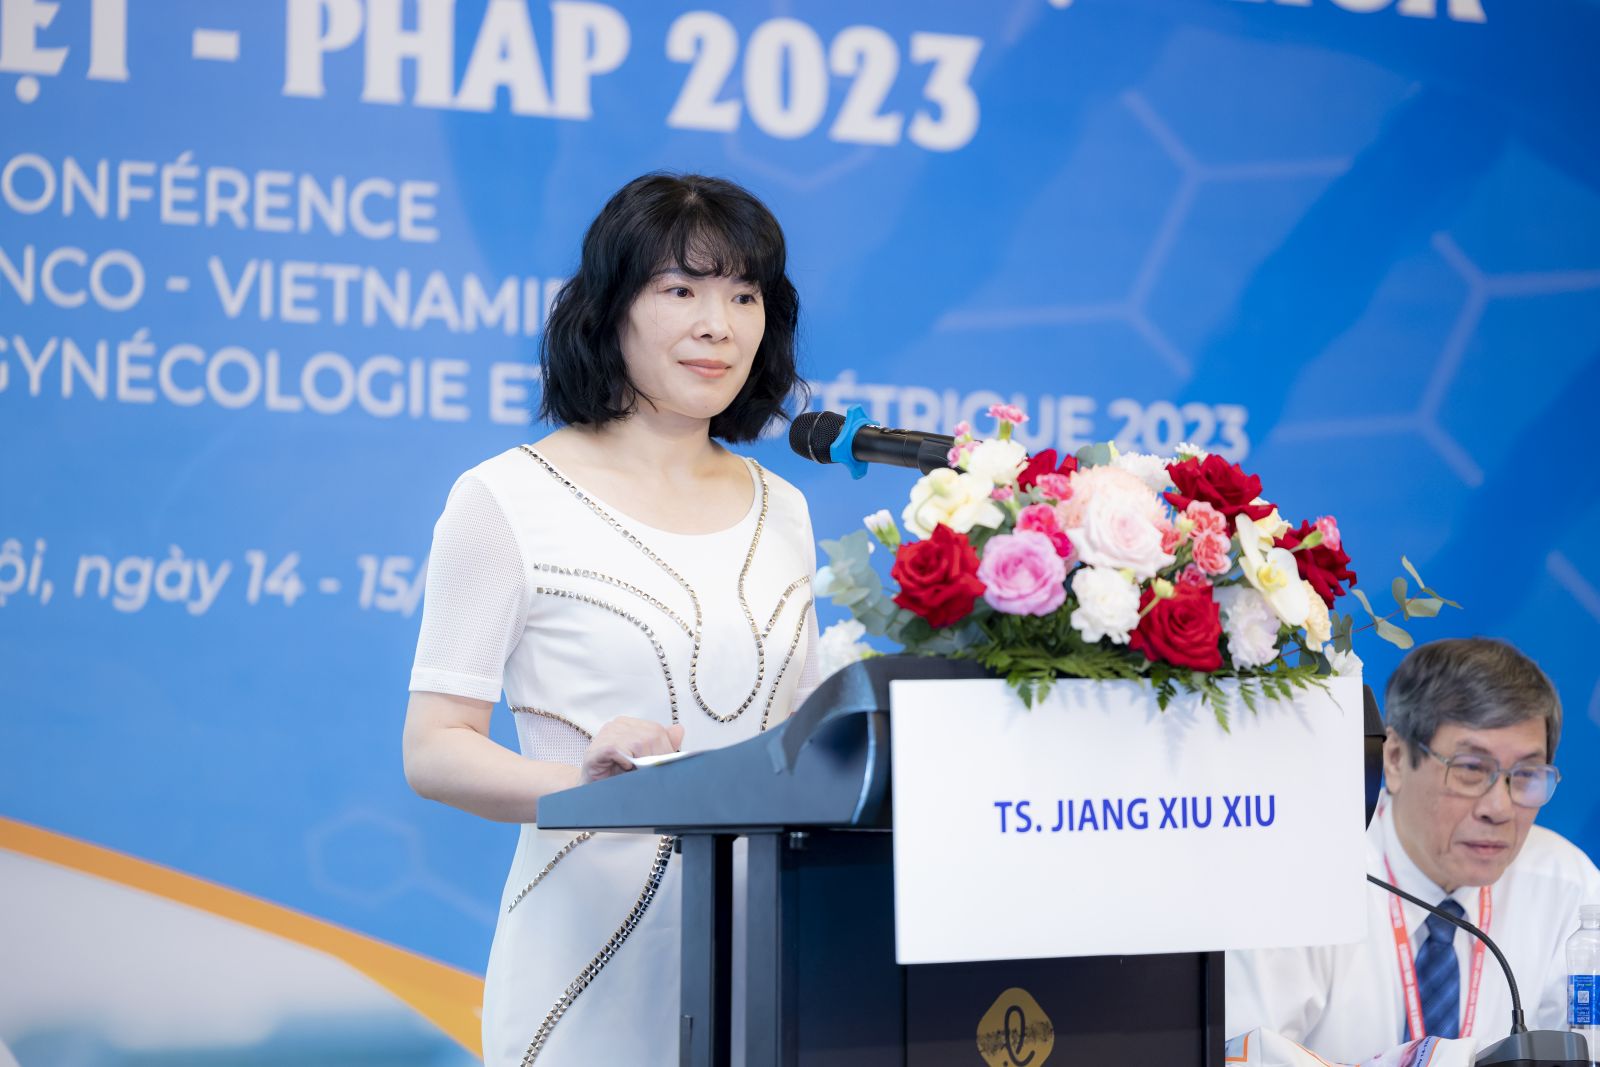 TS. Jiang Xiu Xiu trình bày báo cáo về Vấn đề dính buồng tử cung sau phẫu thuật